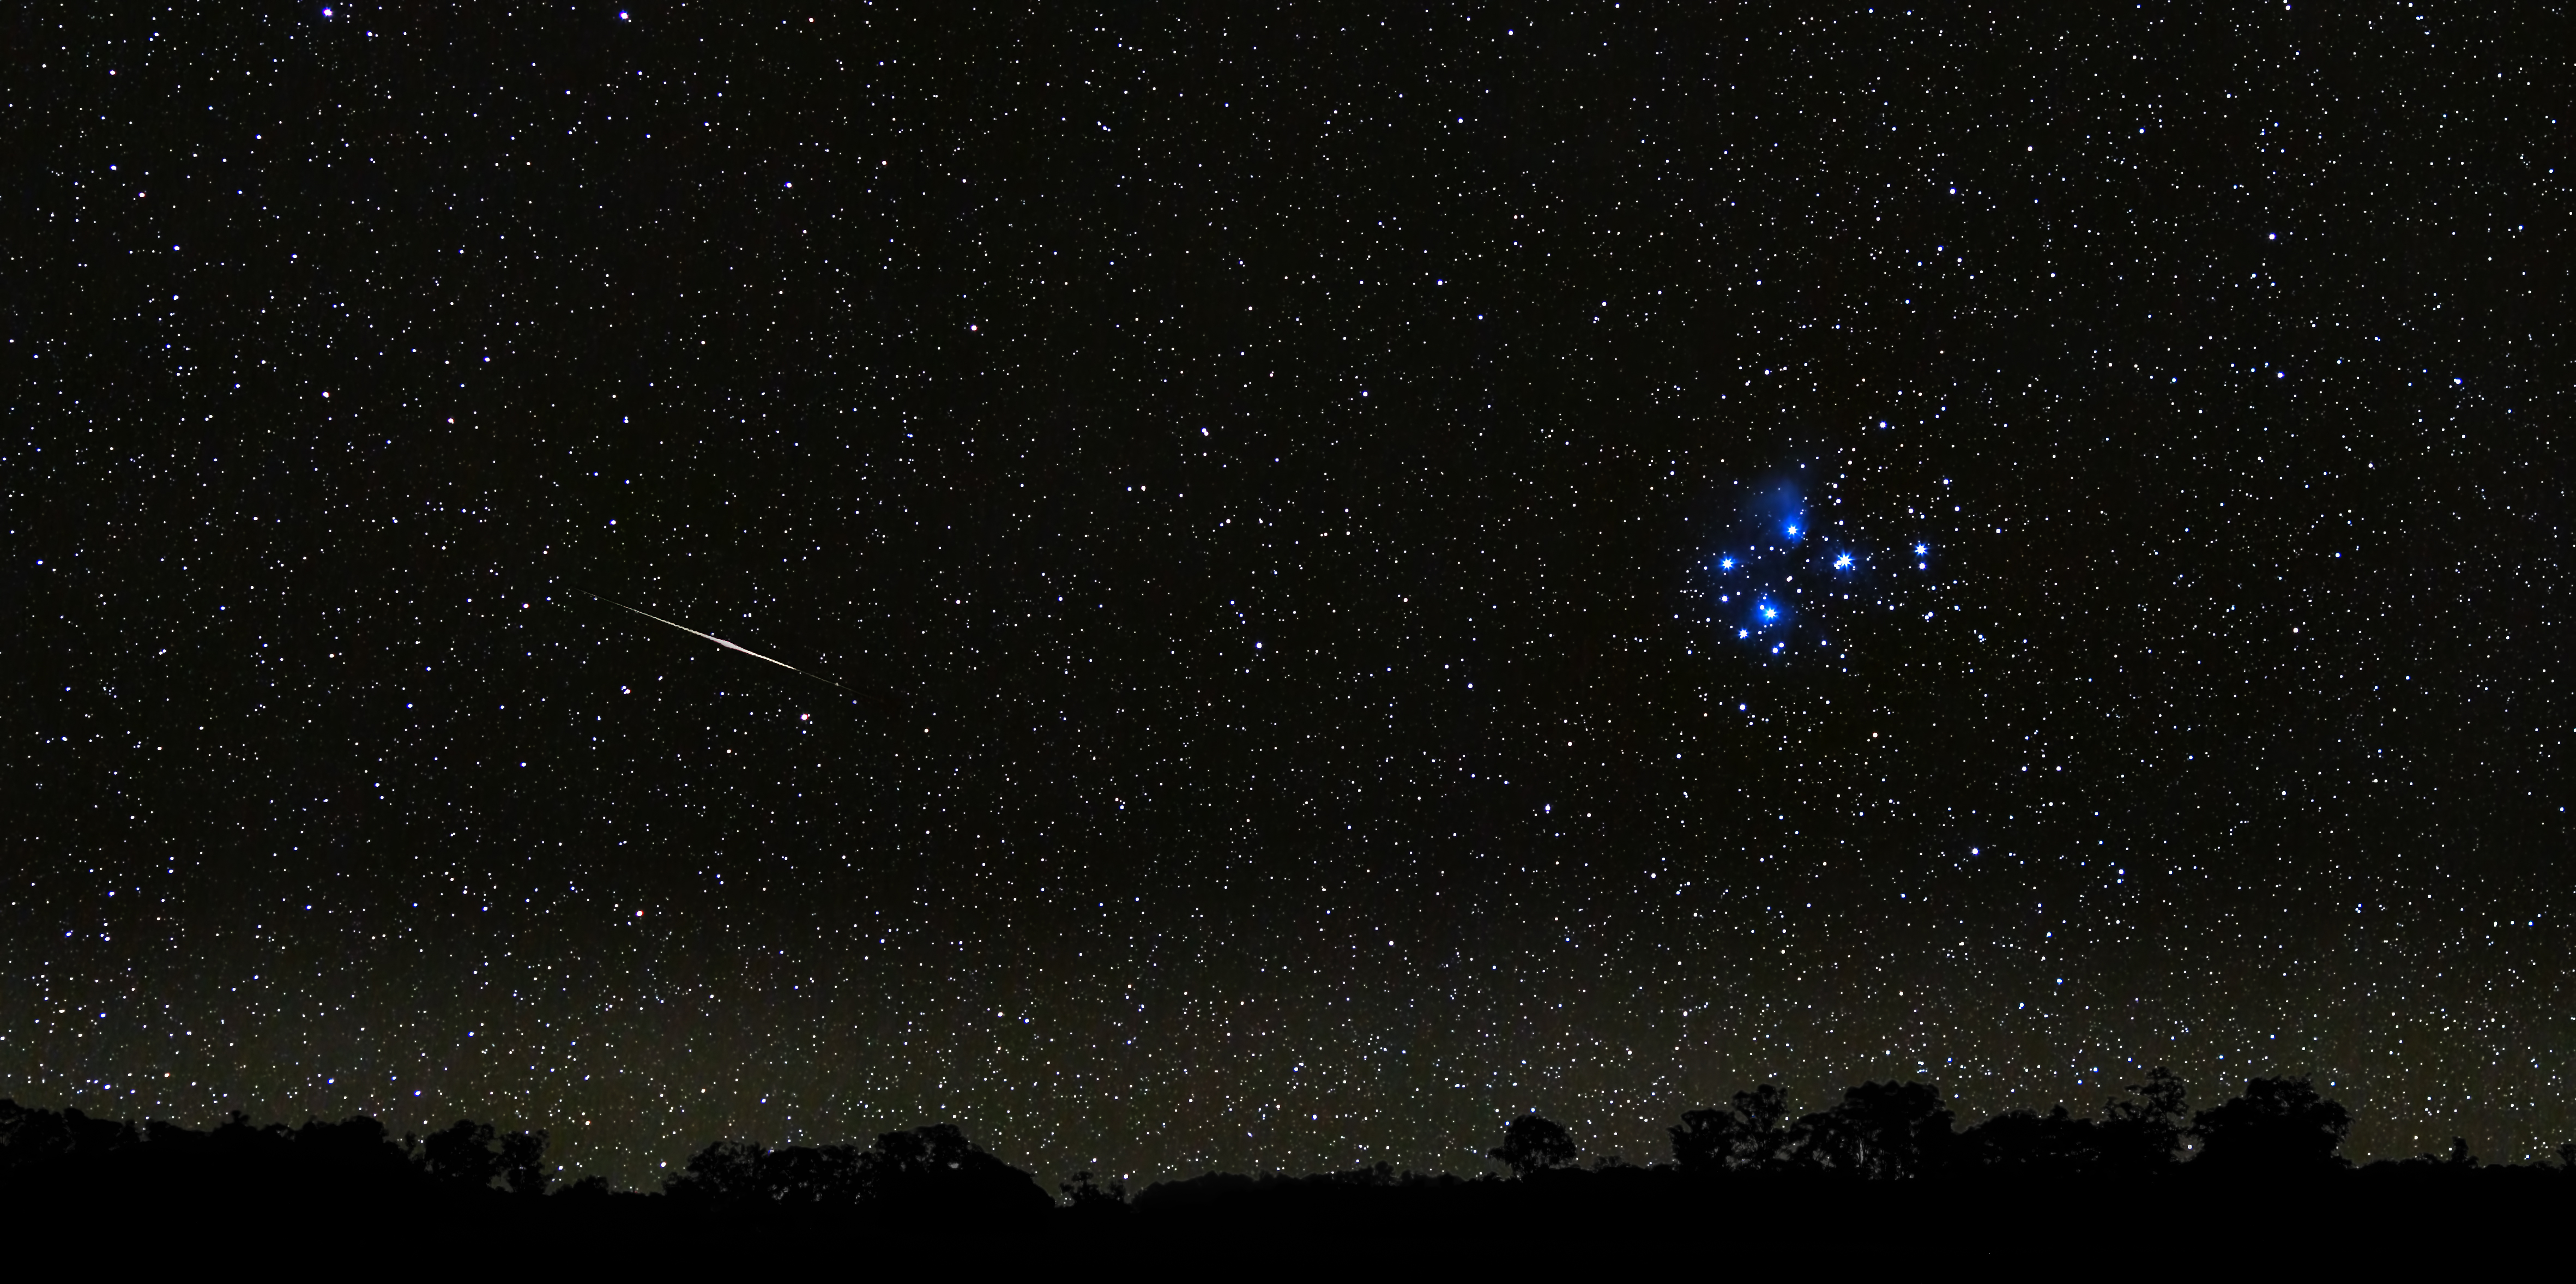 4K wallpaper   Space   Pleiades meteor stars   4725x2355 4725x2355